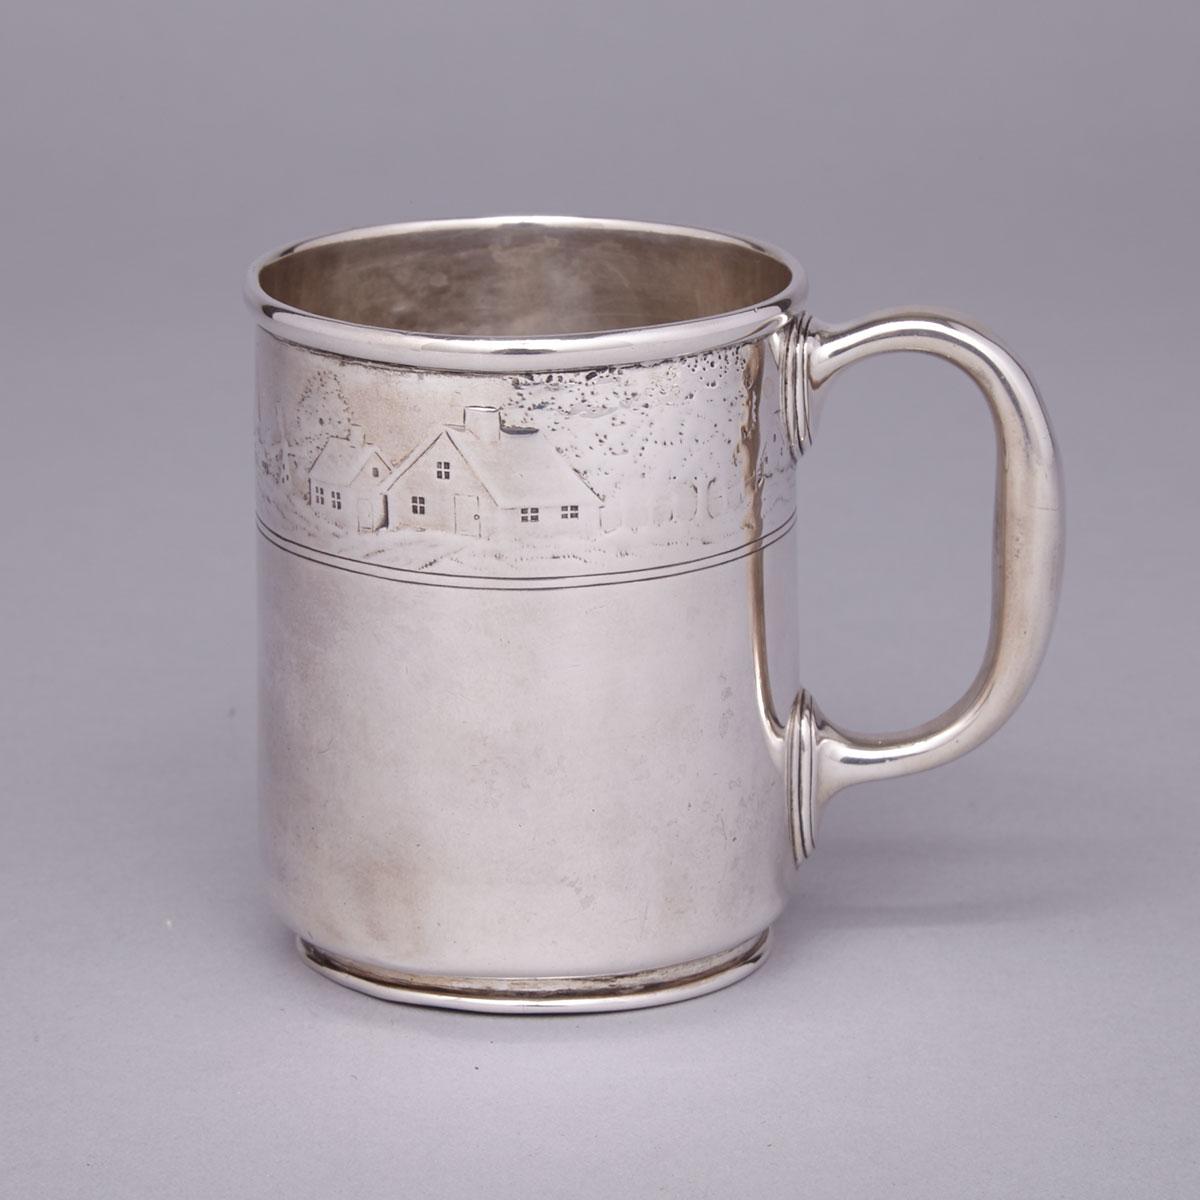 American Silver Child’s Mug, Tiffany & Co., New York, N.Y., early 20th century